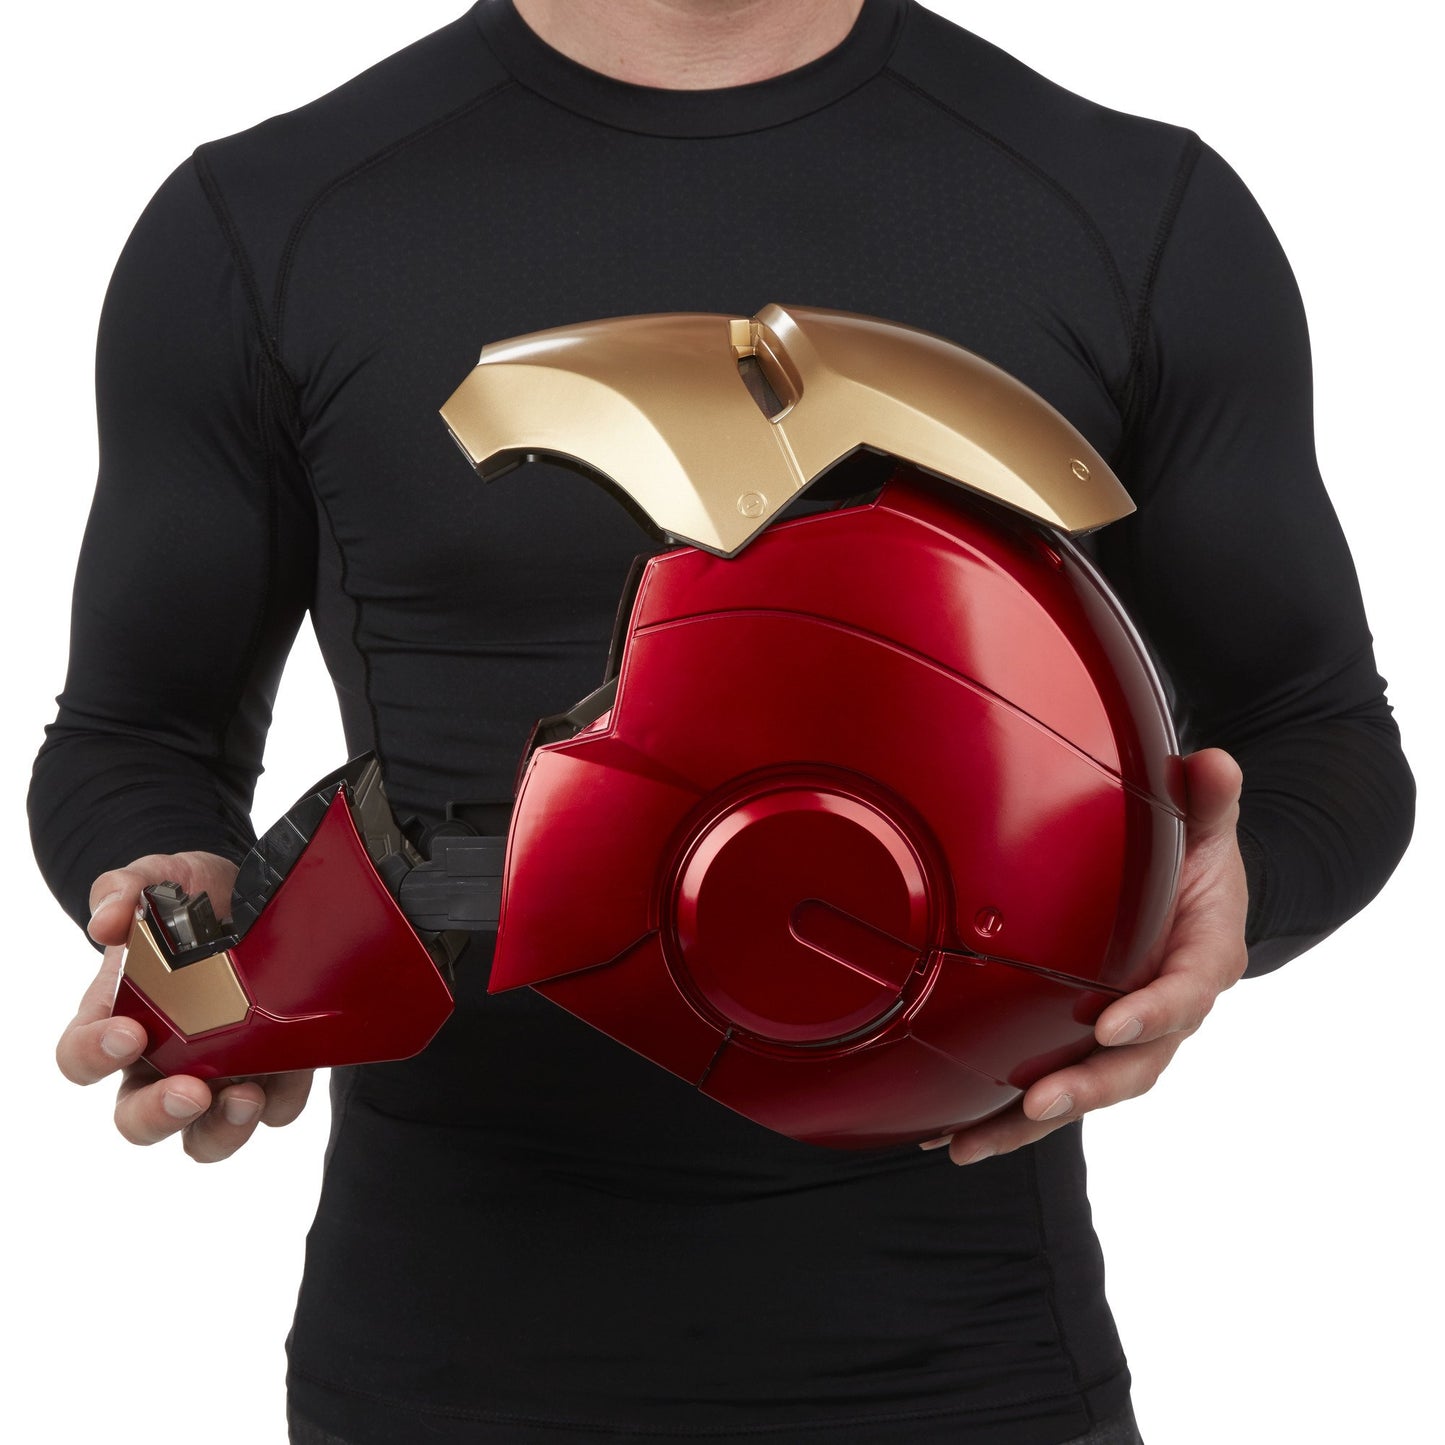 Avengers Legends Gear Iron Man Helmet Figure